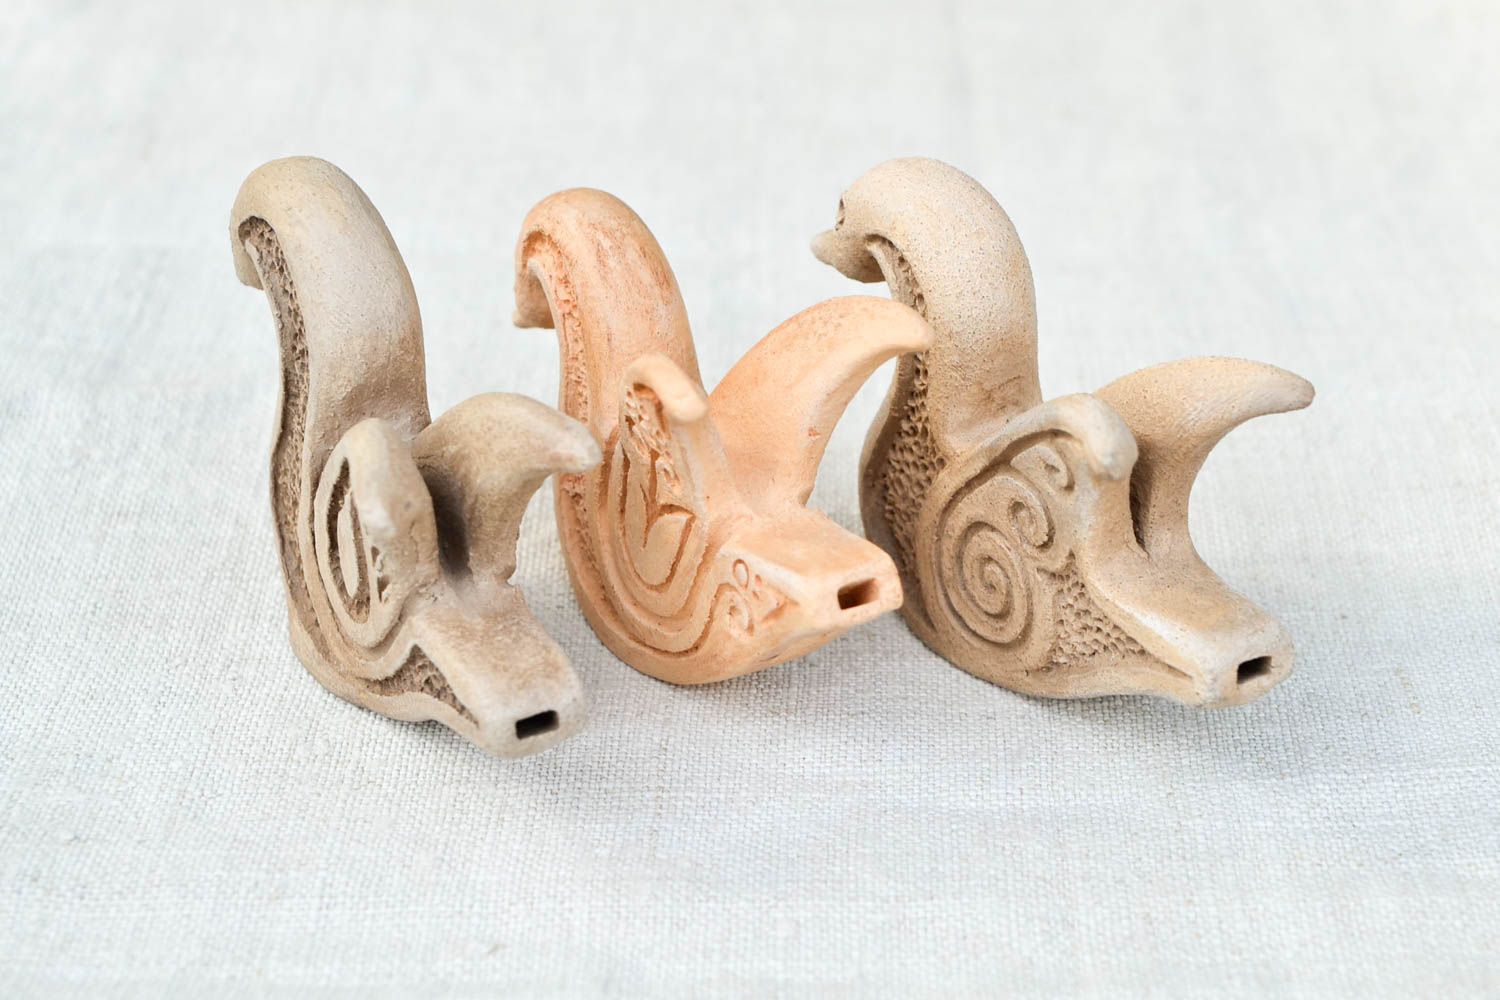 Глиняные игрушки набор сувениры глиняные handmade оригинальный подарок 3 штуки фото 5